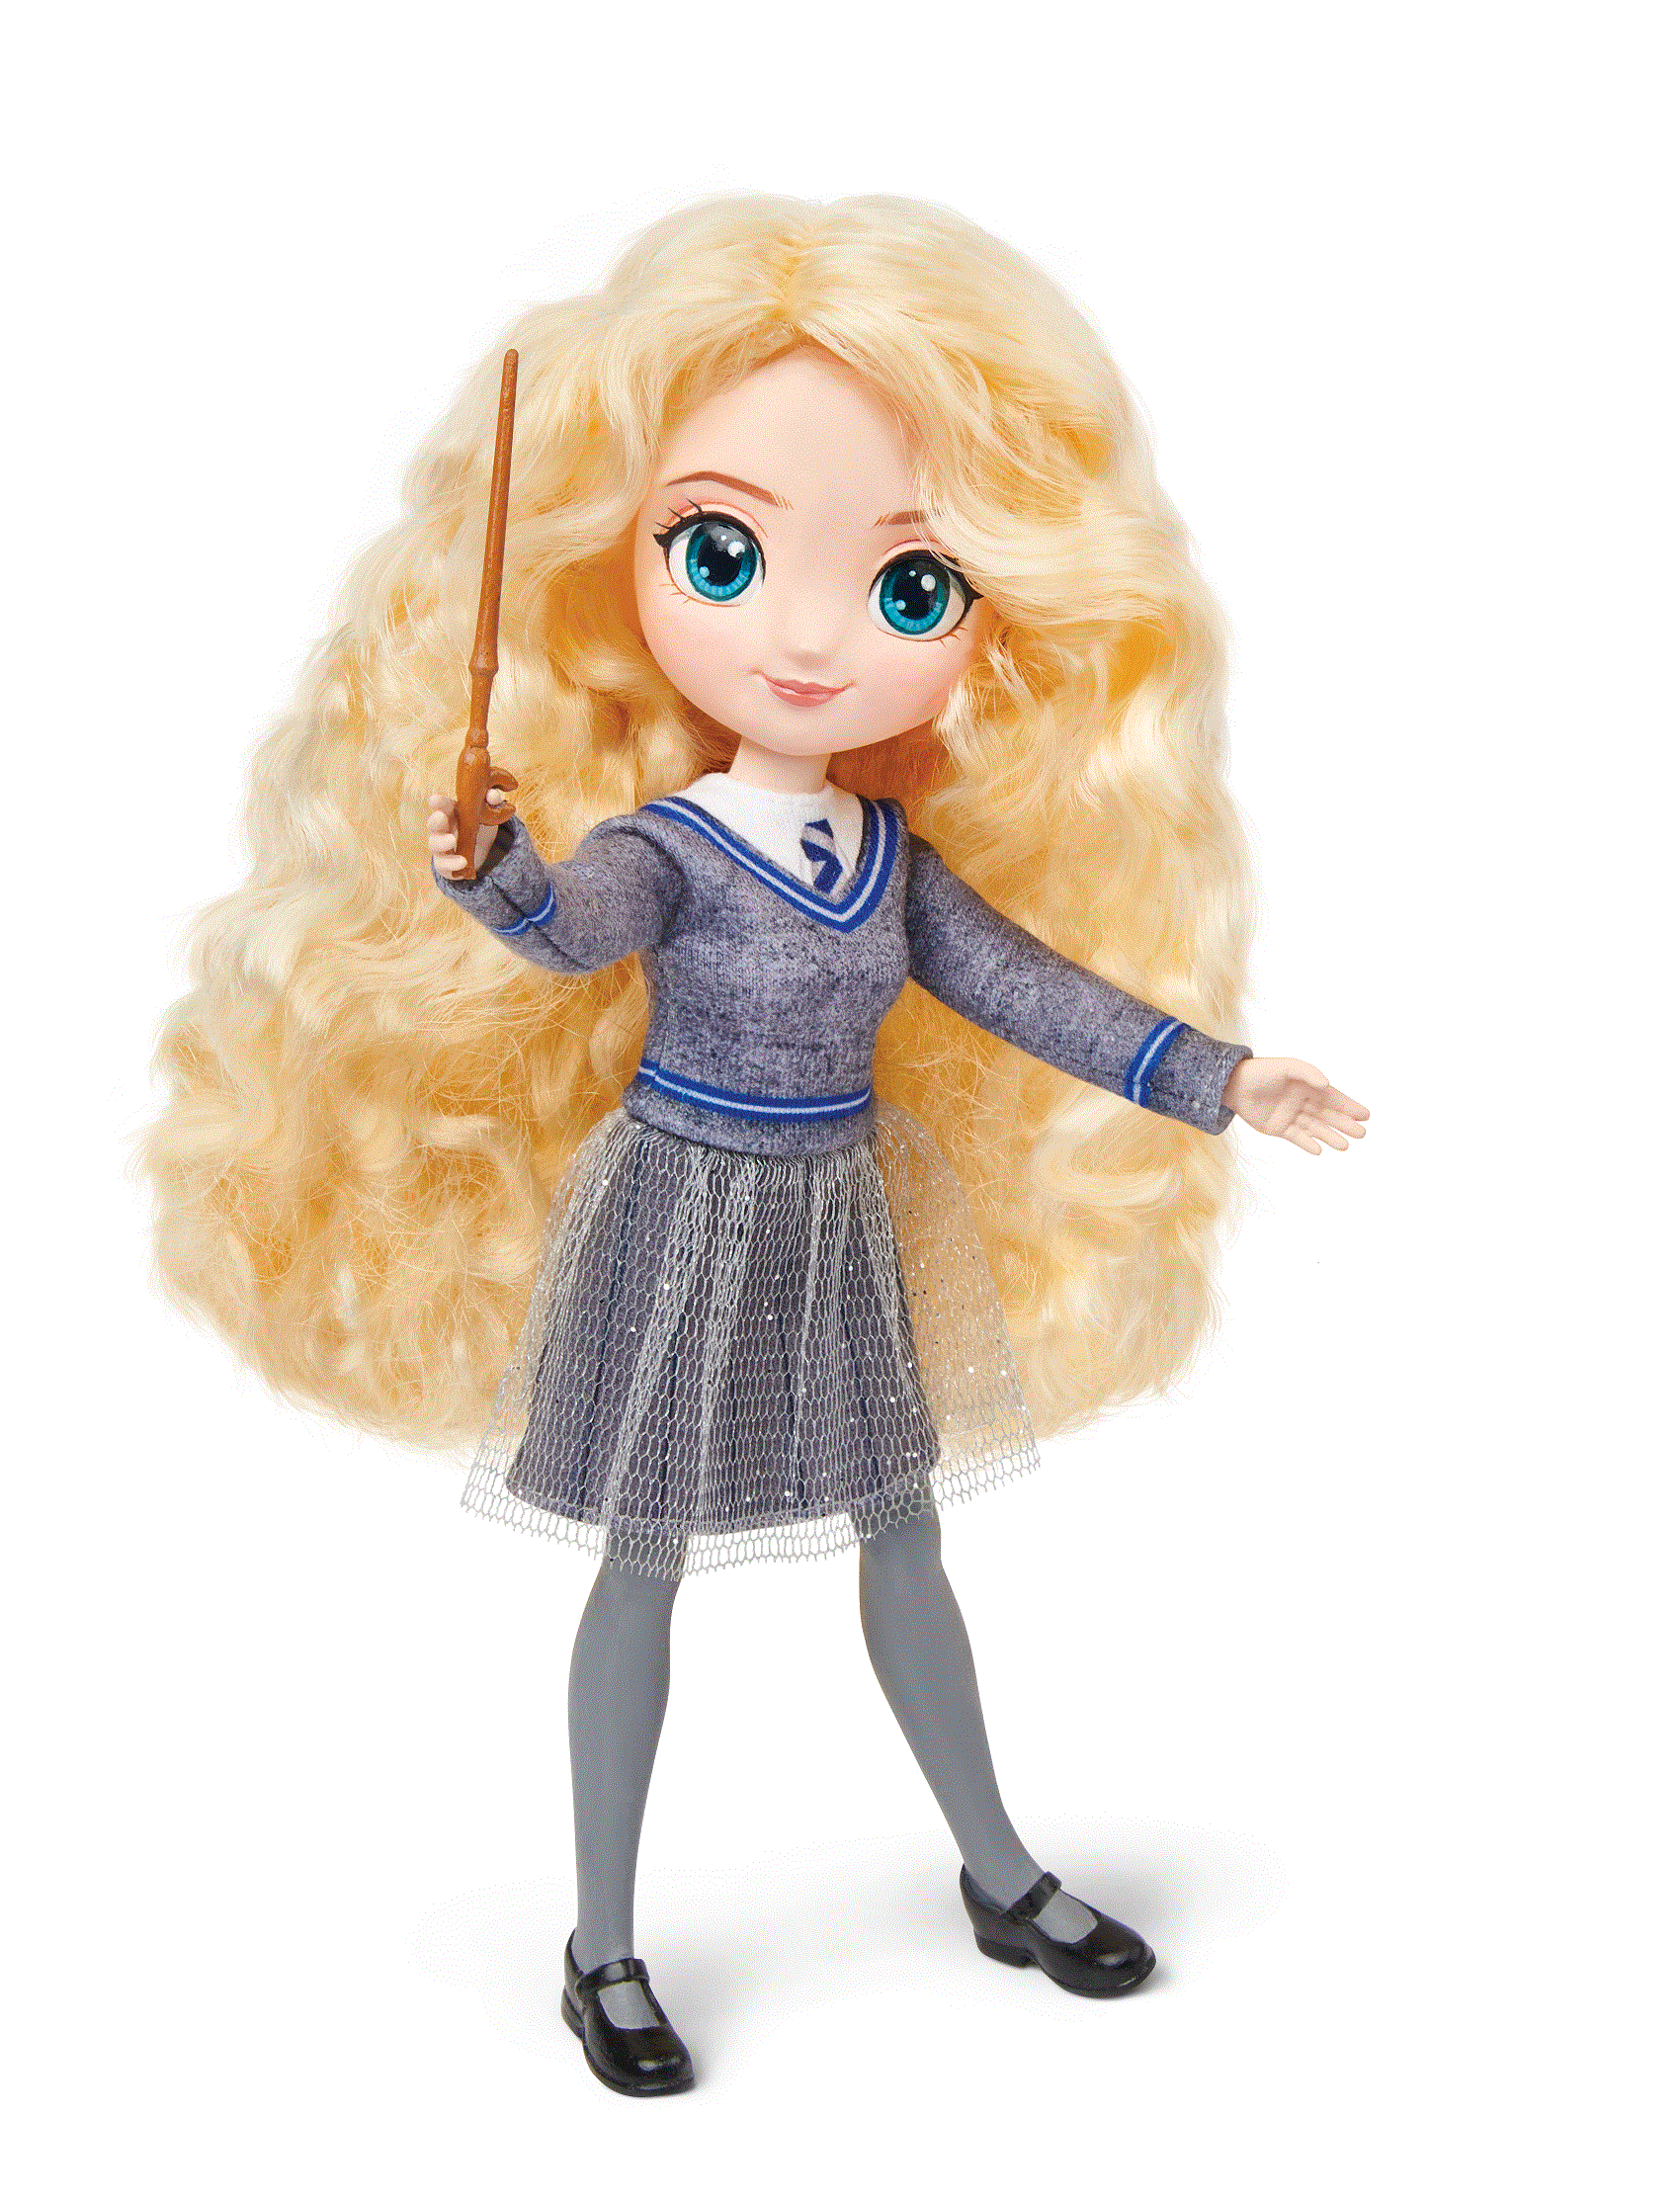 [6061838] Fashion Doll: Harry Potter- Luna Lovegood 8 inch